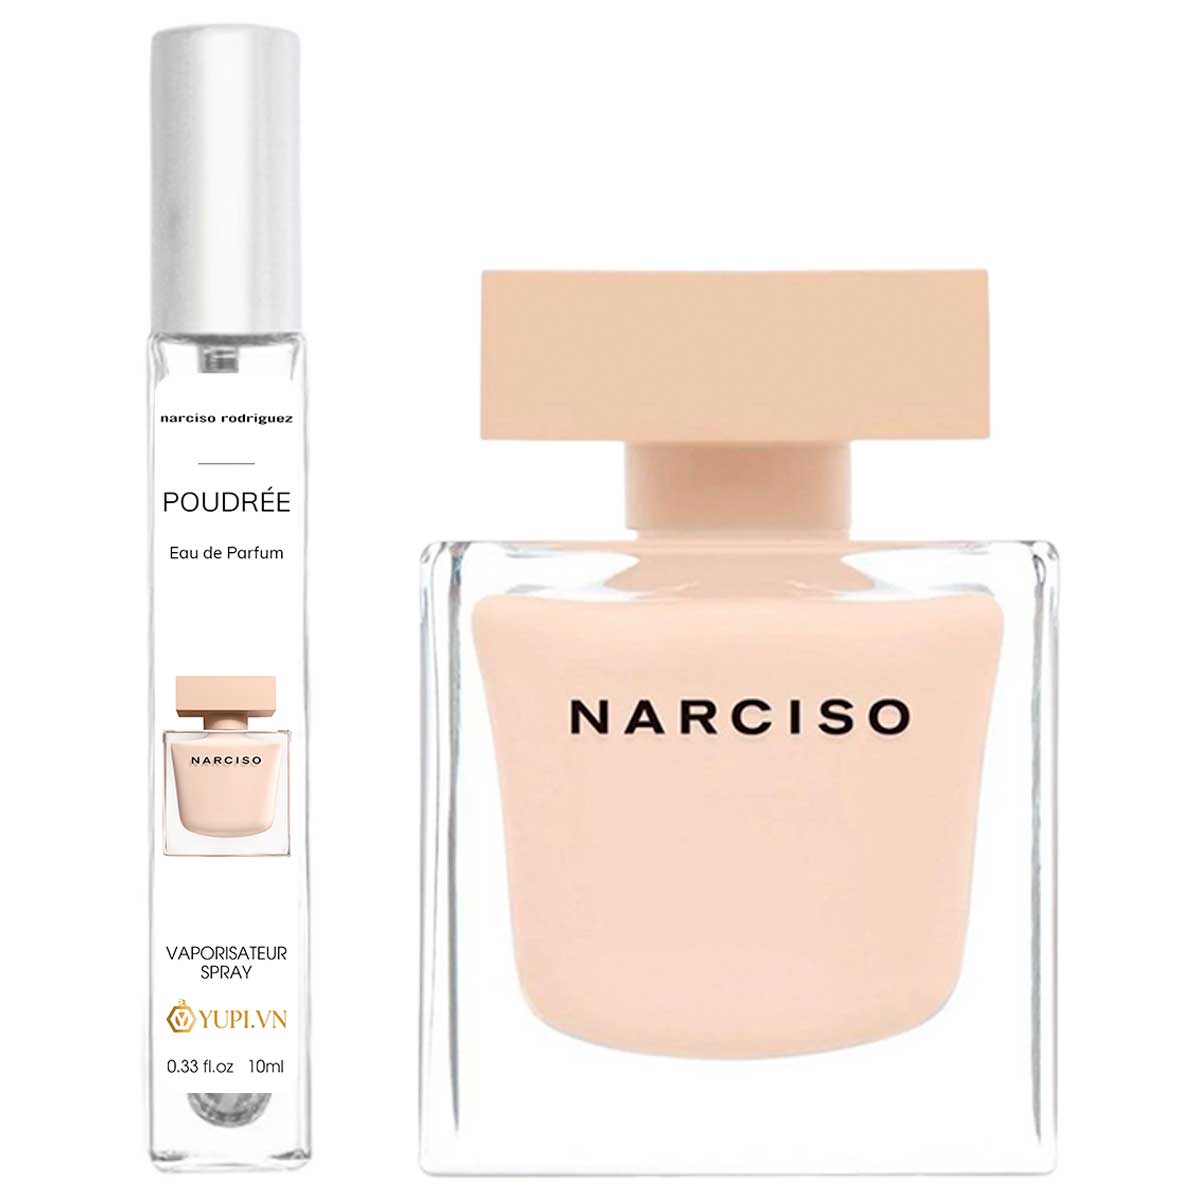 narciso rodriguez poudree eau de parfum chiet 10ml